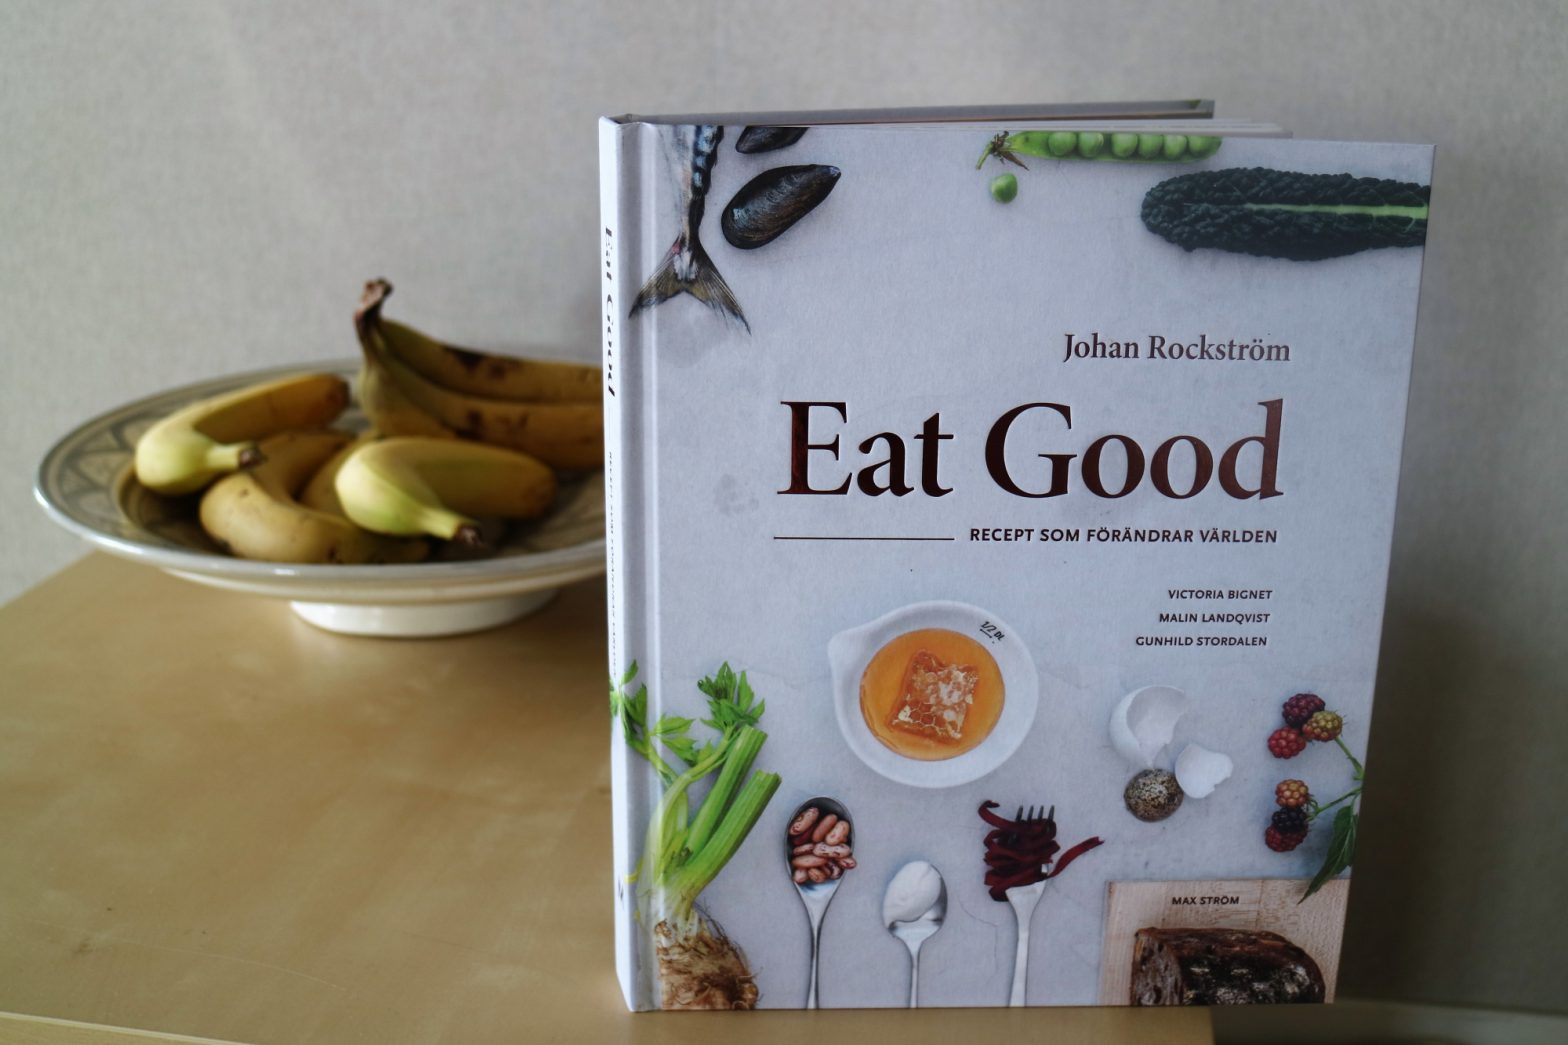 Eat good av Johan Rockström, Victoria Bignet, Malin Landqvist, Gunhild Stordalen